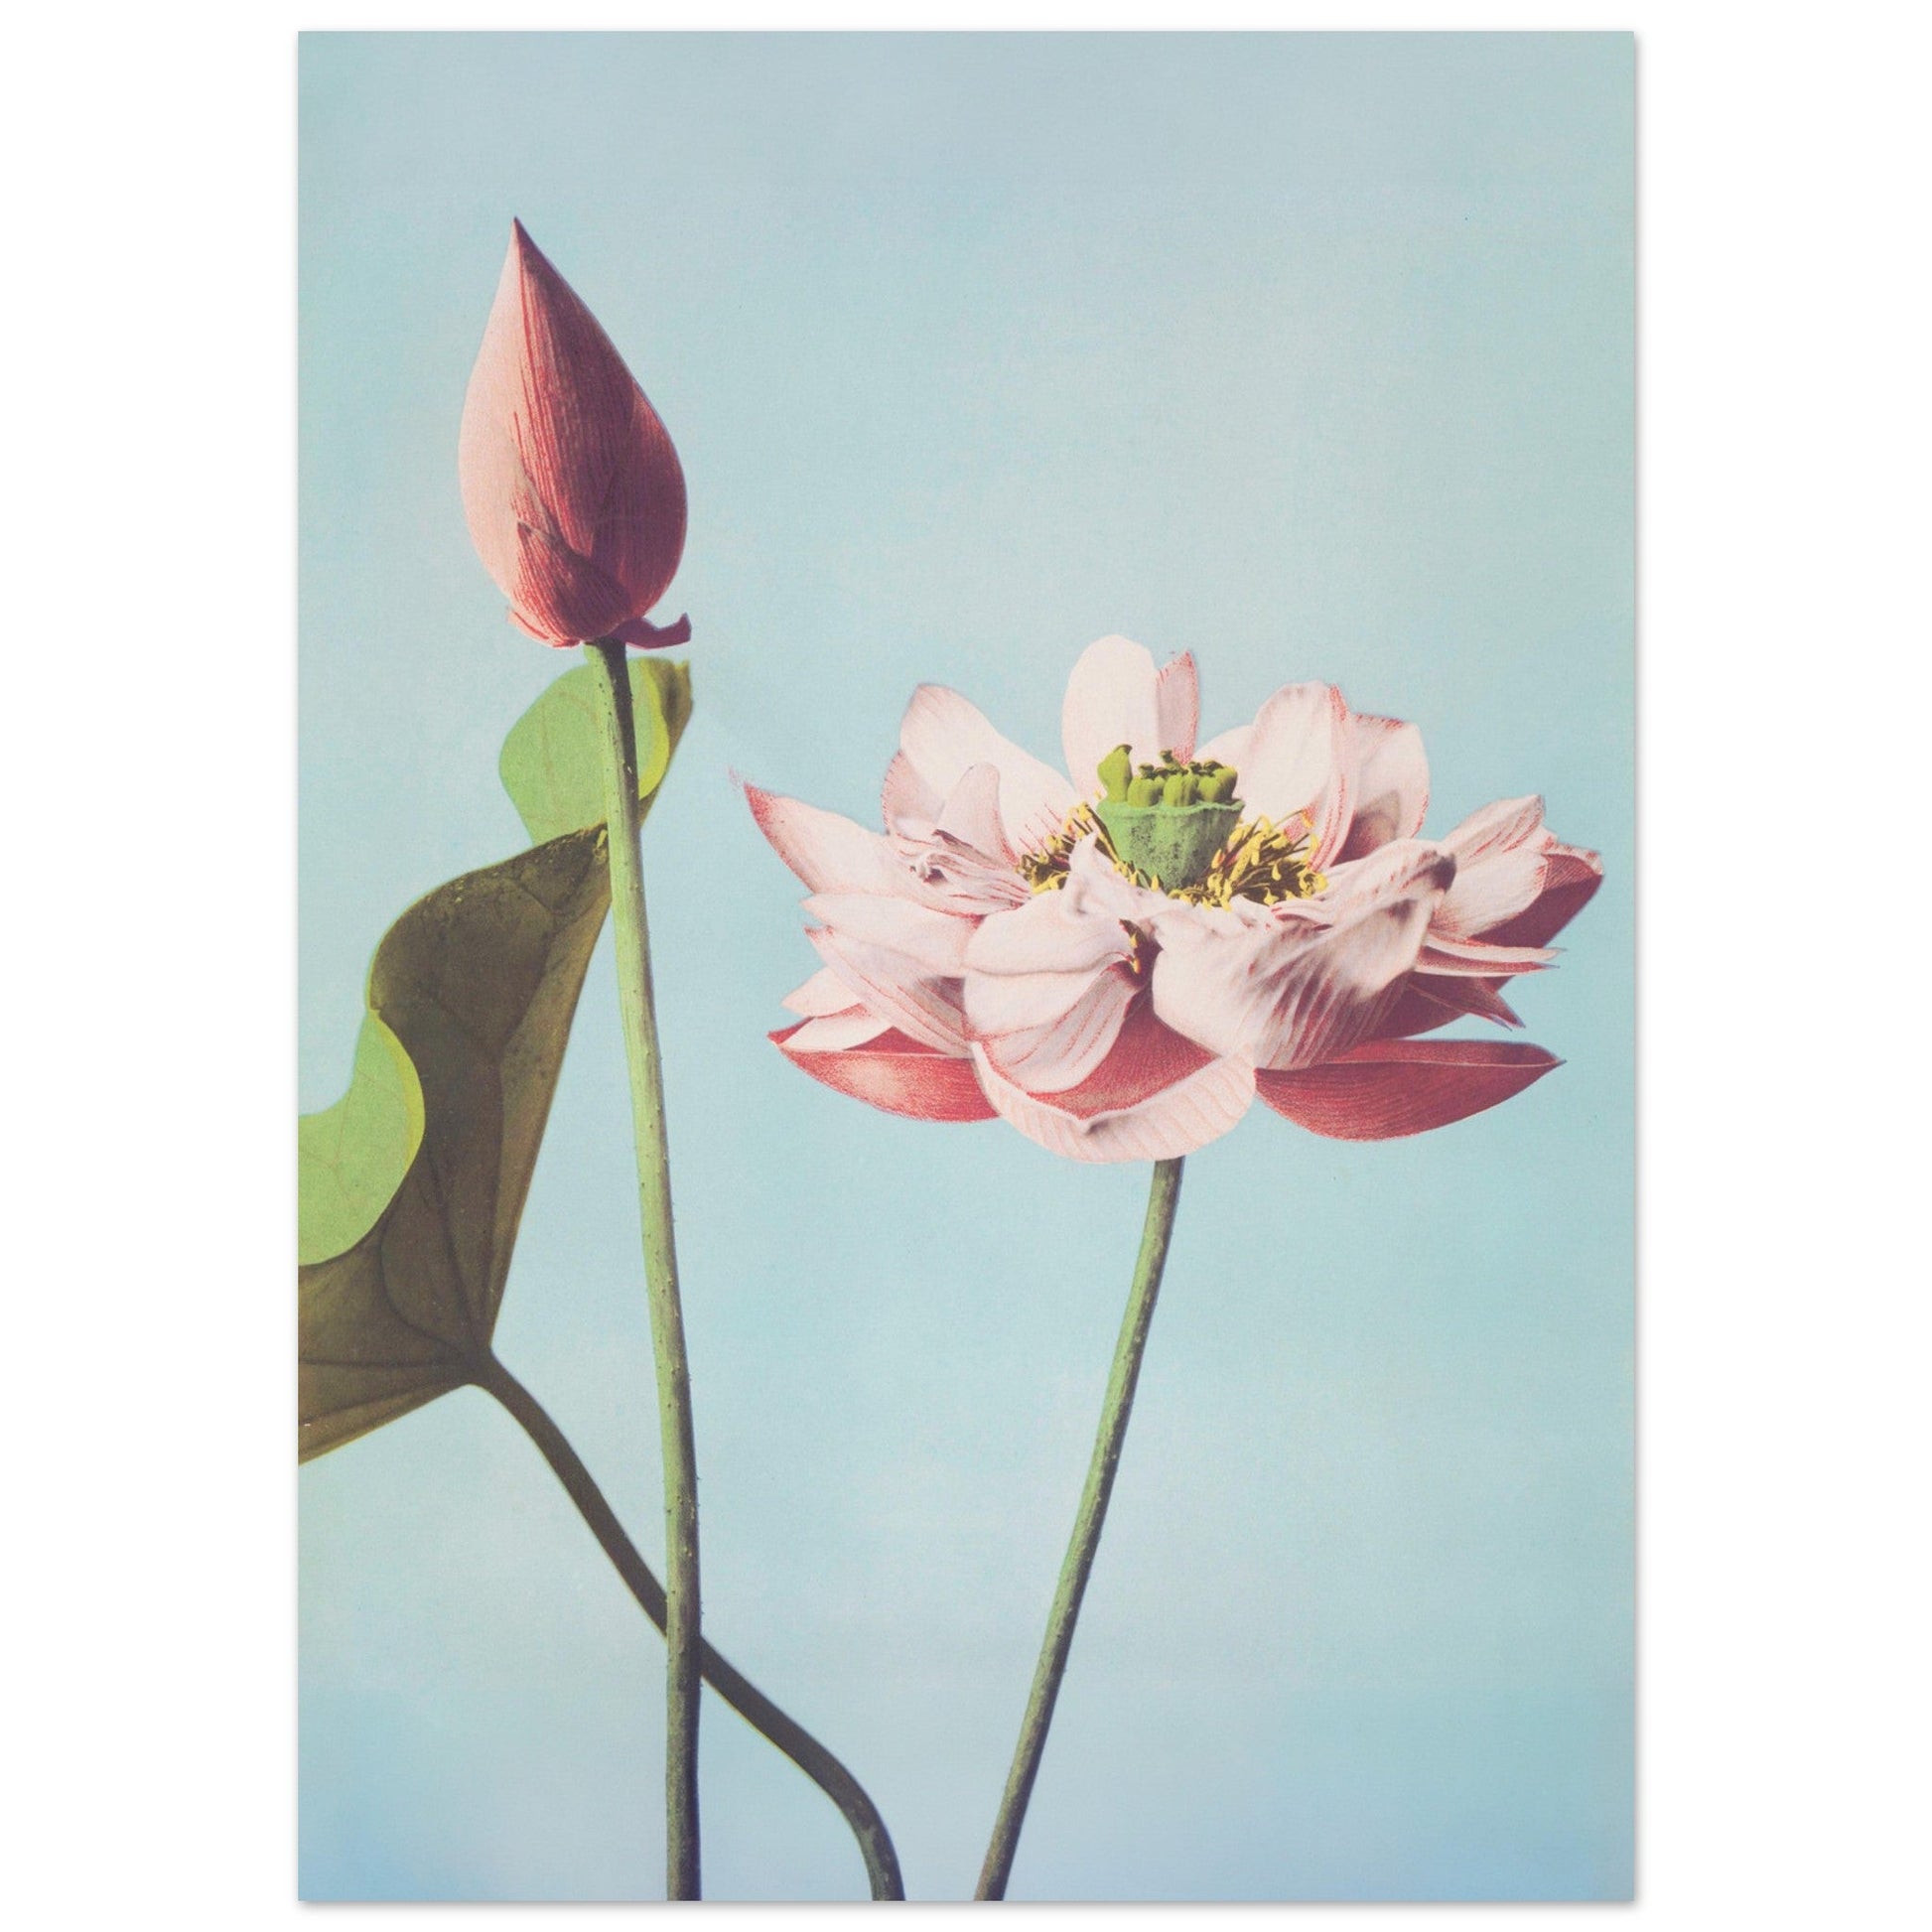 Lotus - Vintage Japanese, botanical art print, Vintage Japanese, Vintage Lotus Prints, #illieeart